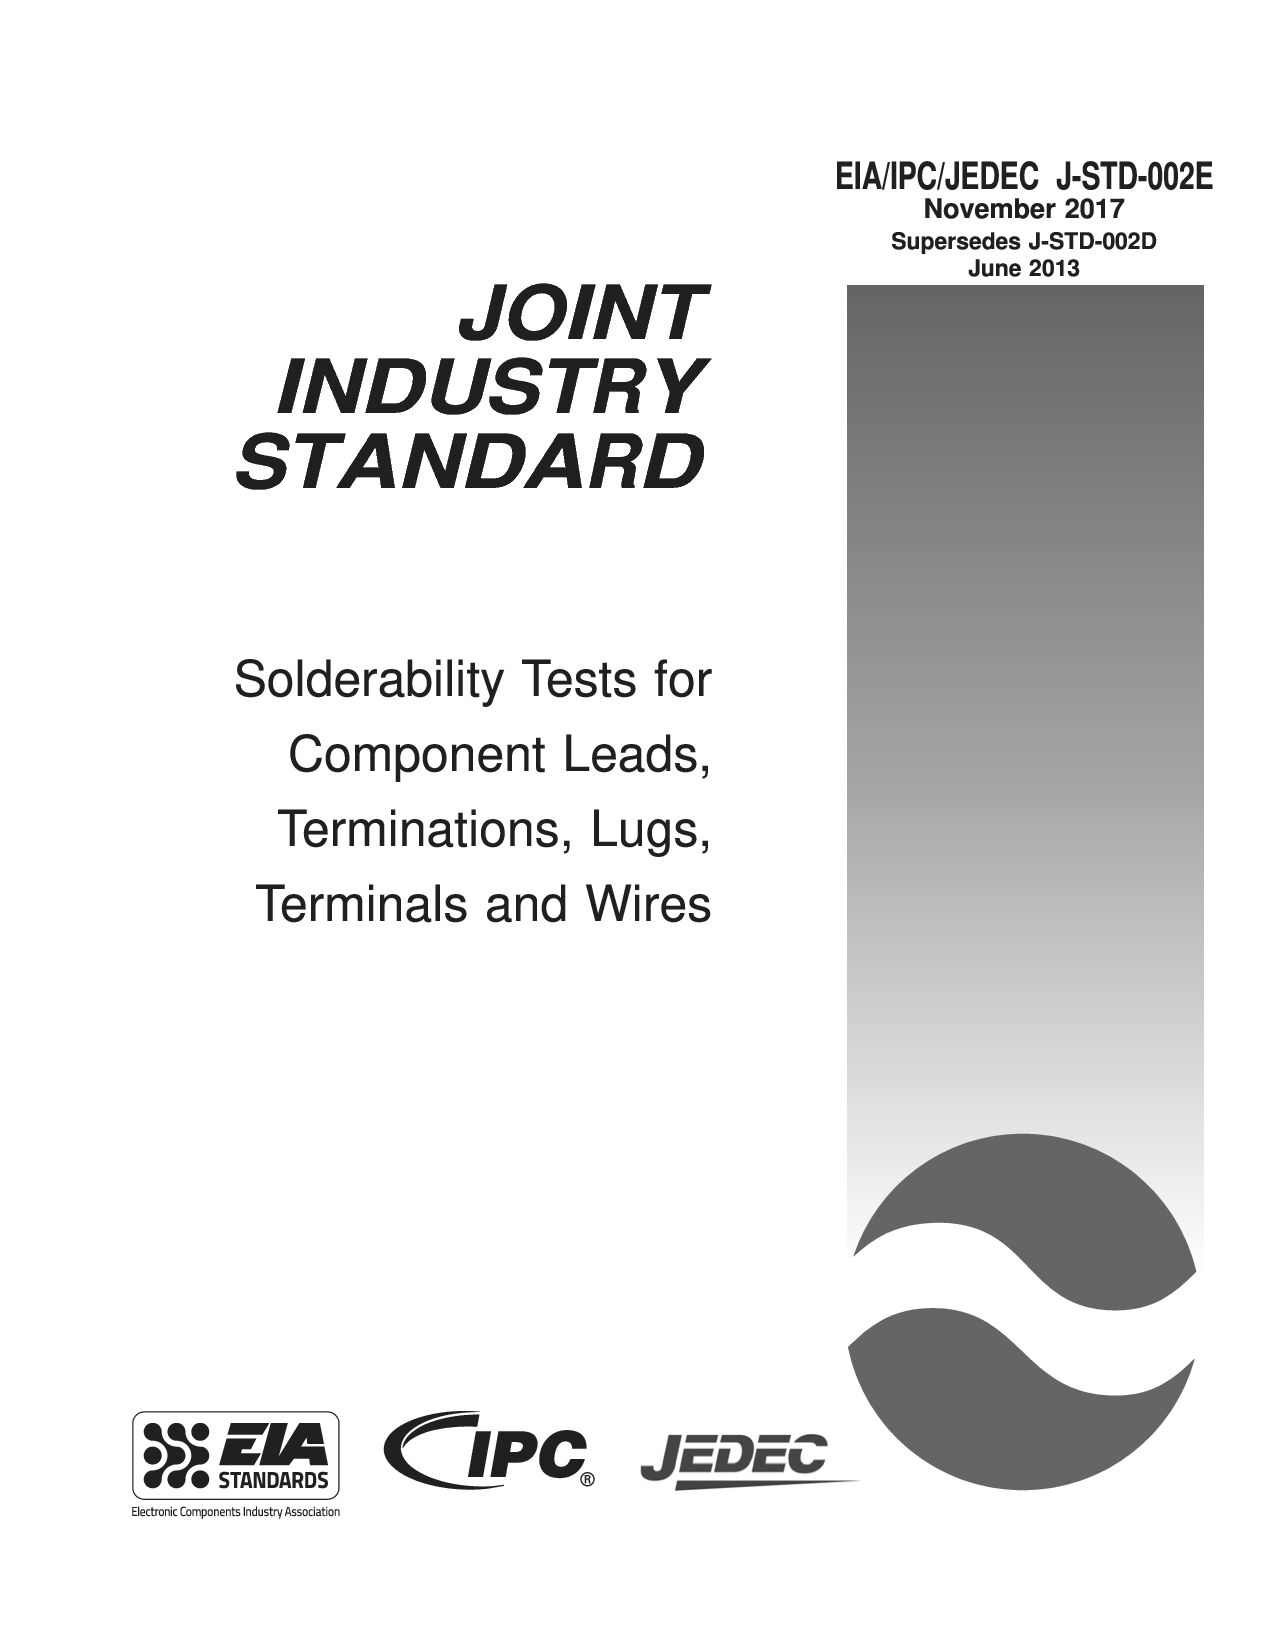 EIA IPC JEDEC J-STD-002E-2017